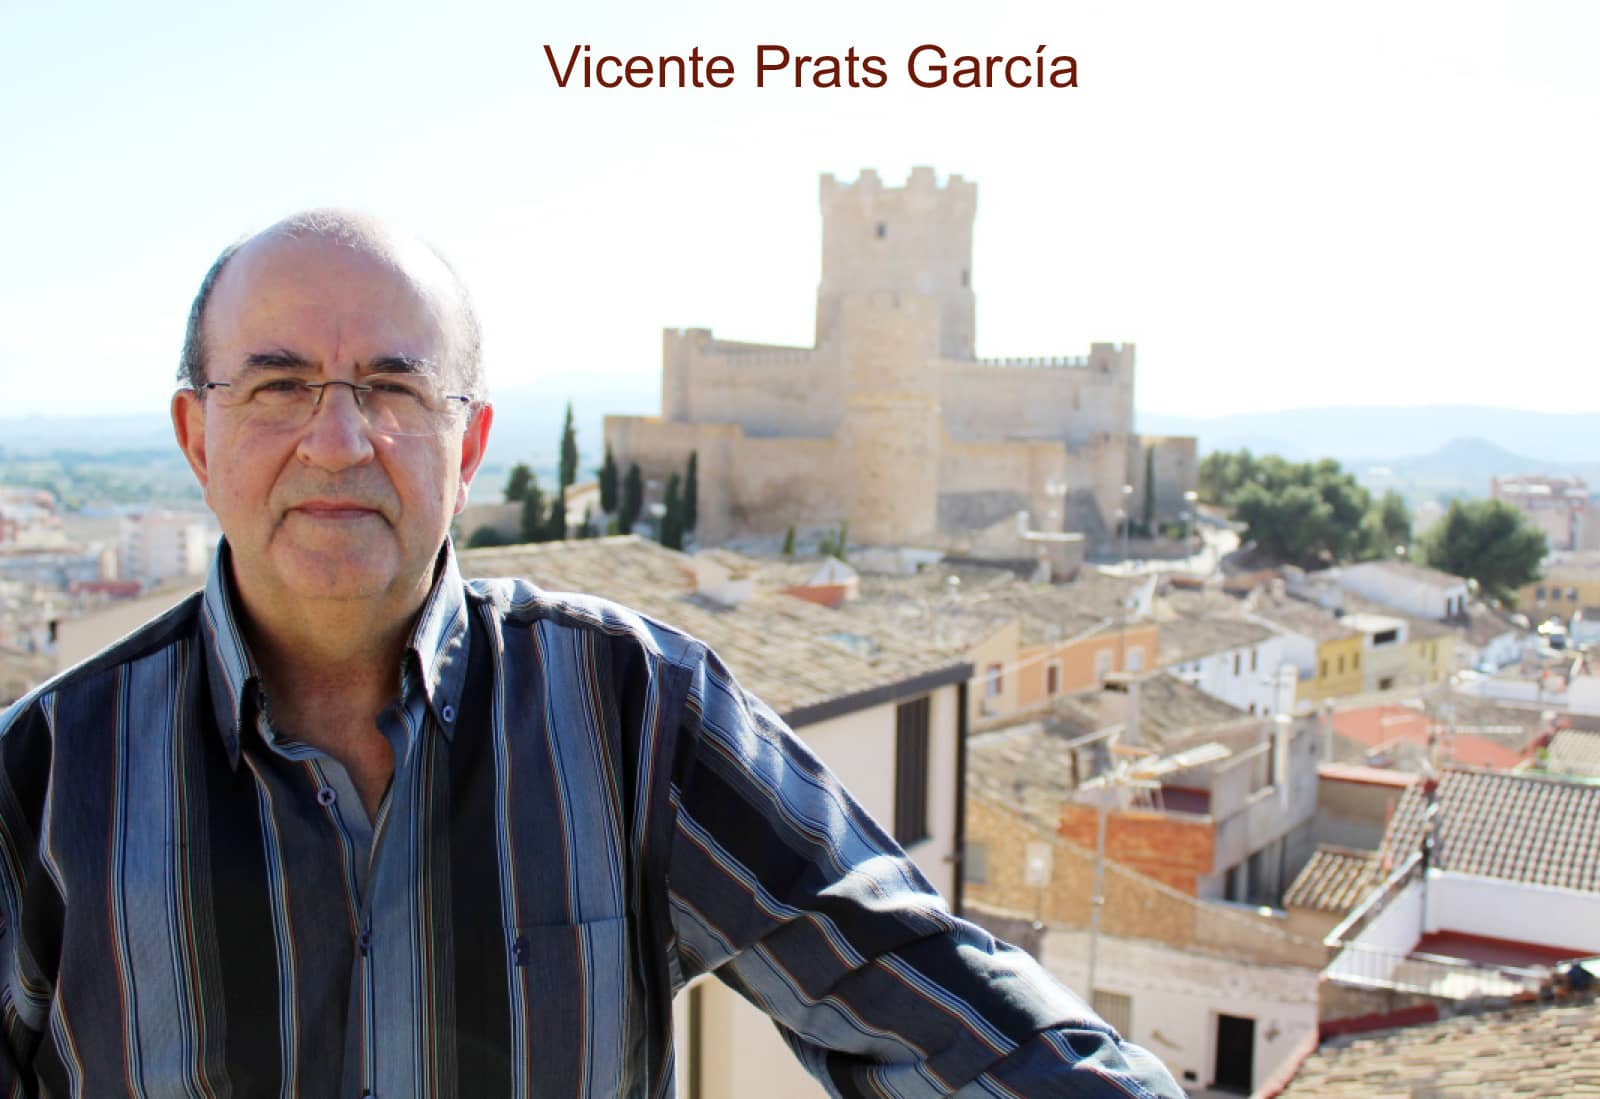 La comparsa de Estudiantes presentará el libro ganador del XV Premio de Ensayo e Investigación “Faustino Alonso Gotor” de Vicente Prats García